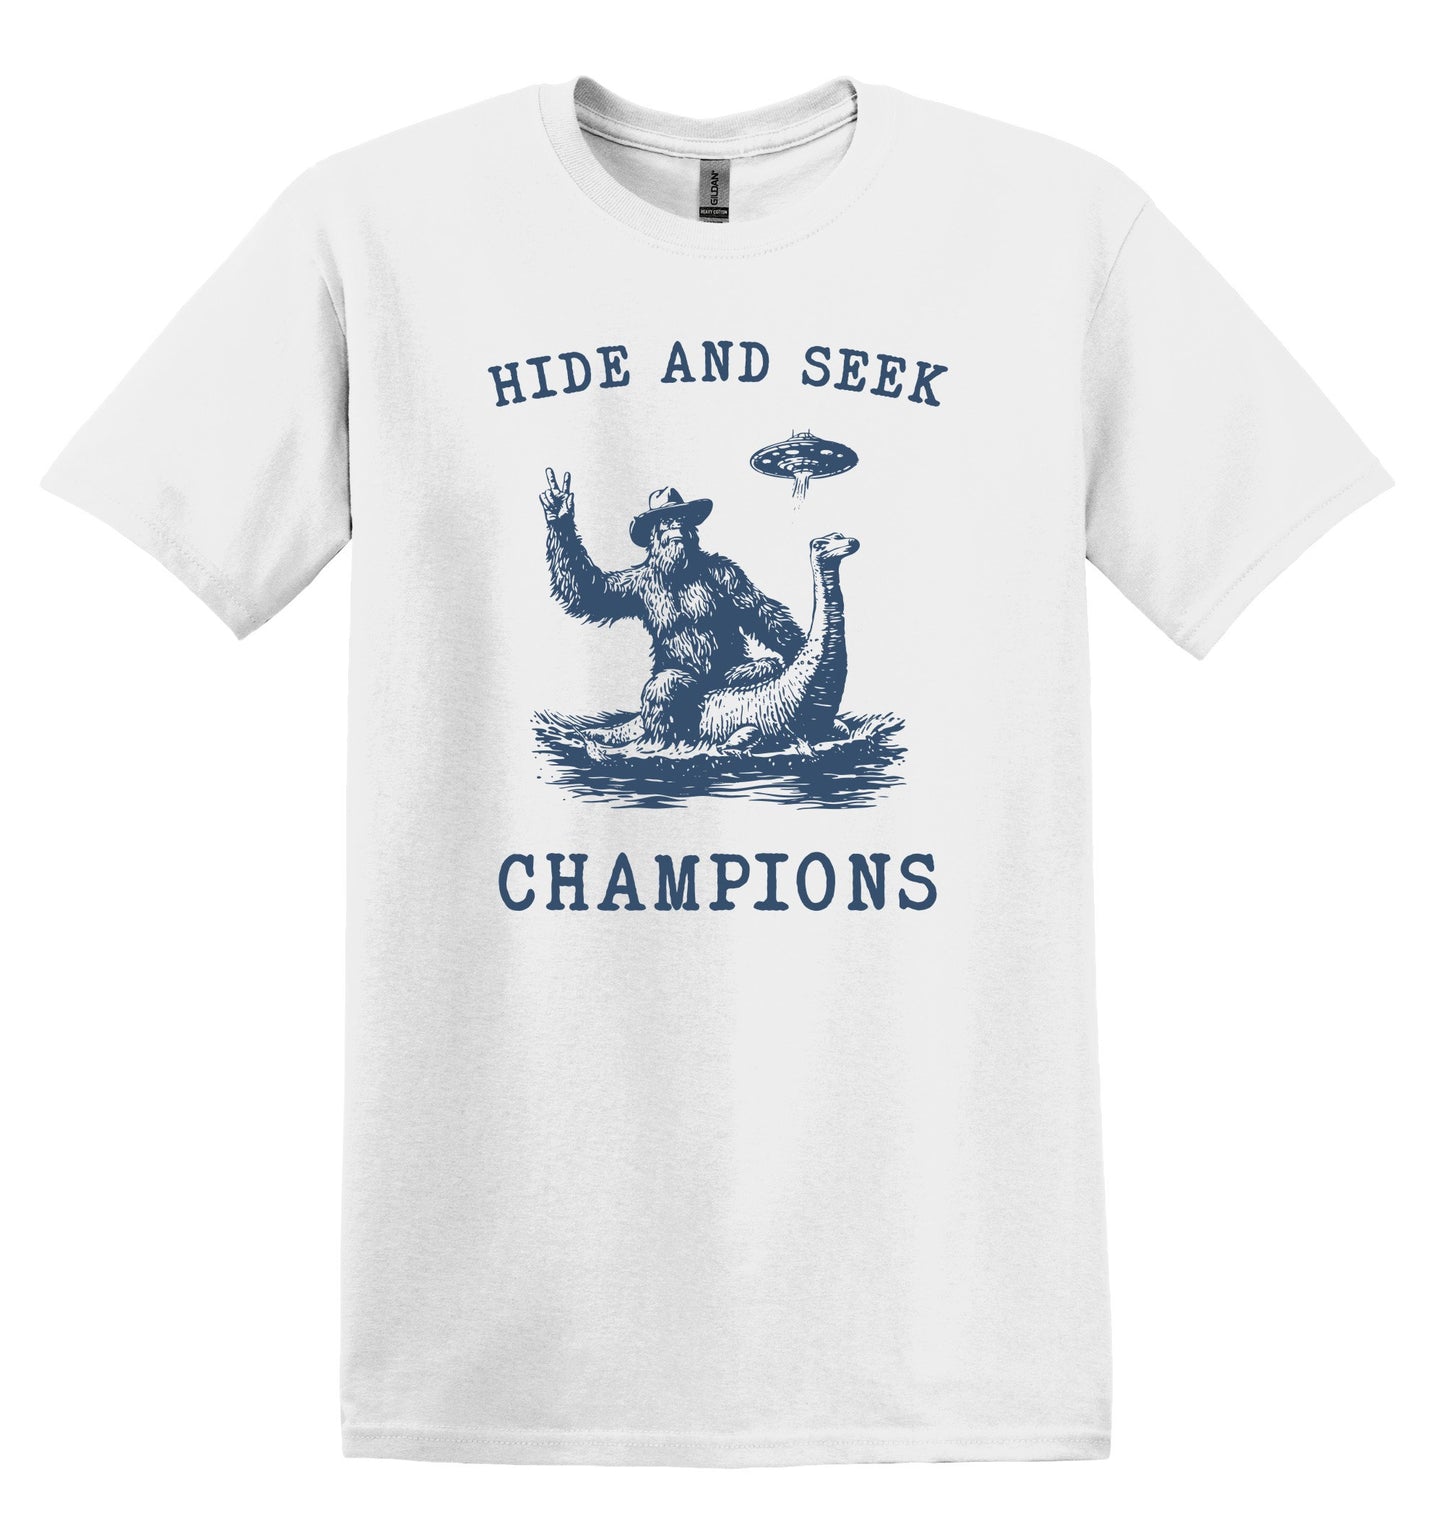 Hide and Seek Champions Shirt Graphic Shirt Funny Shirts Vintage Funny TShirts Minimalist Shirt Unisex Shirt Nostalgia Shirt